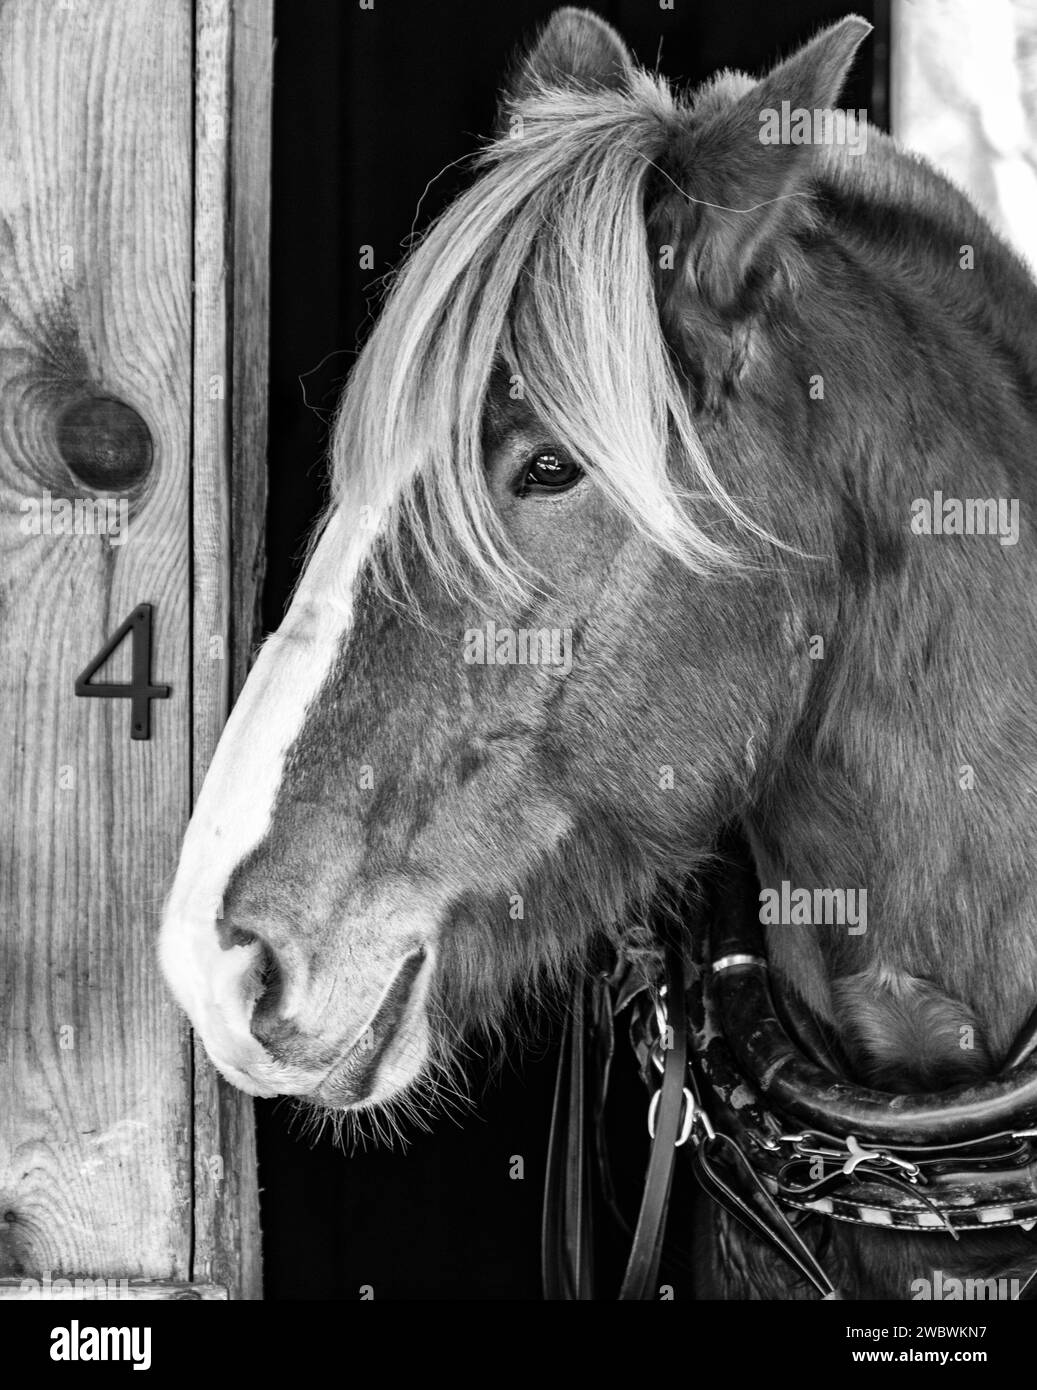 Un gros plan d'un cheval de trait belge (Equus ferus caballus) révèle sa crinière jaune, son pelage brun rougeâtre et ses yeux bruns. Banque D'Images